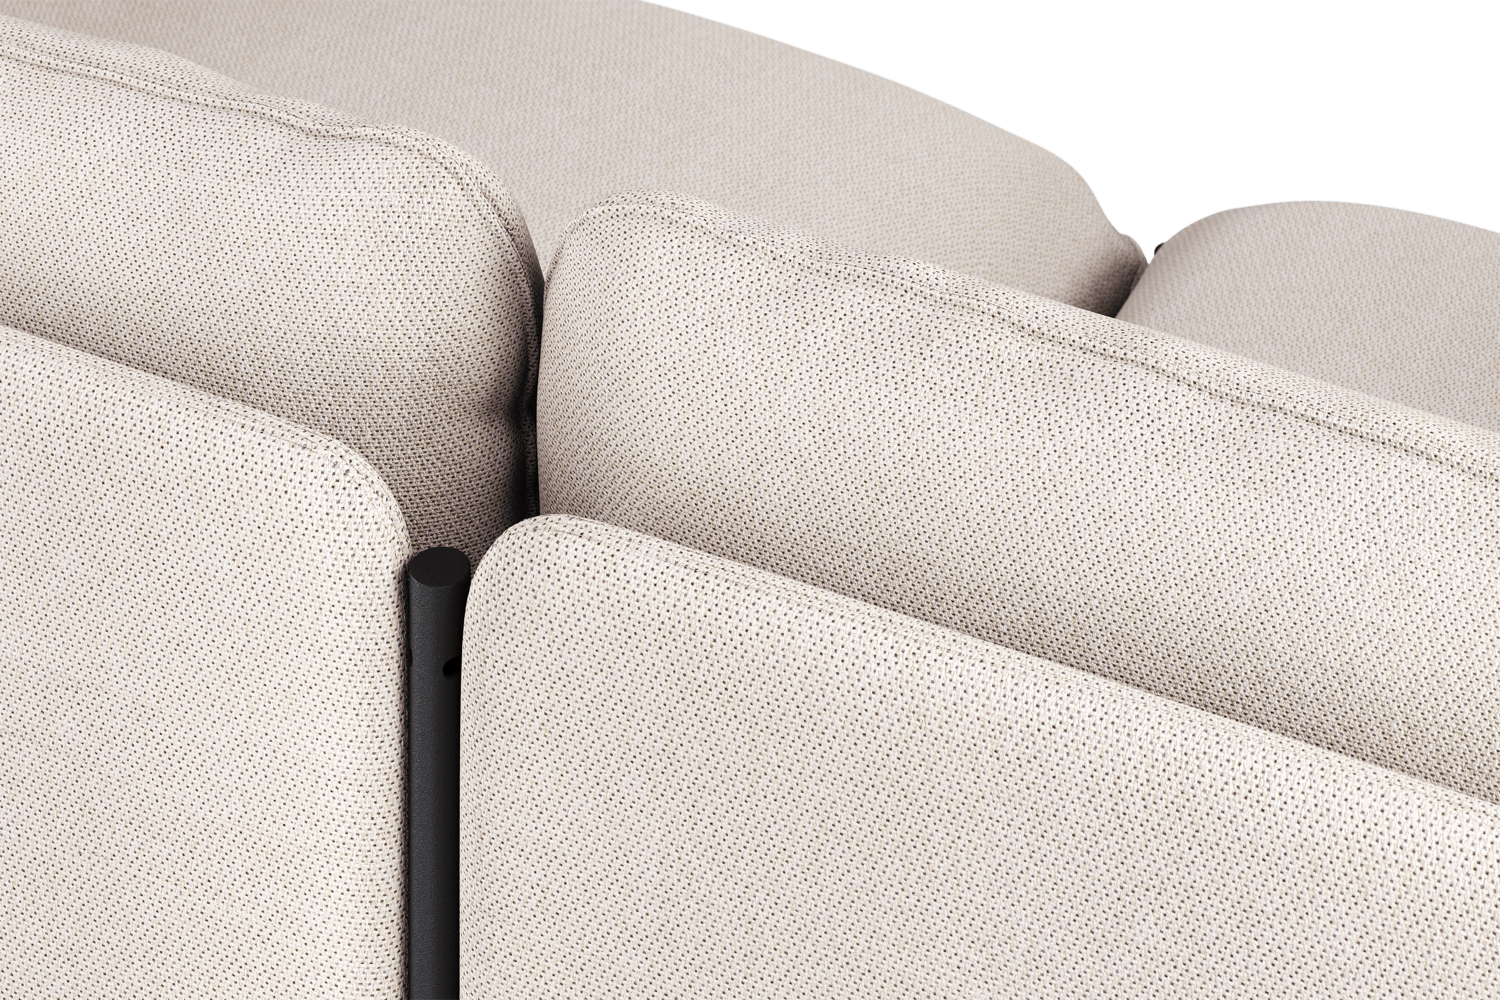 Toom Modular Sofa 4-Sitzer Konfiguration 2b in Oatmilk Beige  präsentiert im Onlineshop von KAQTU Design AG. Ecksofa links ist von Noo.ma